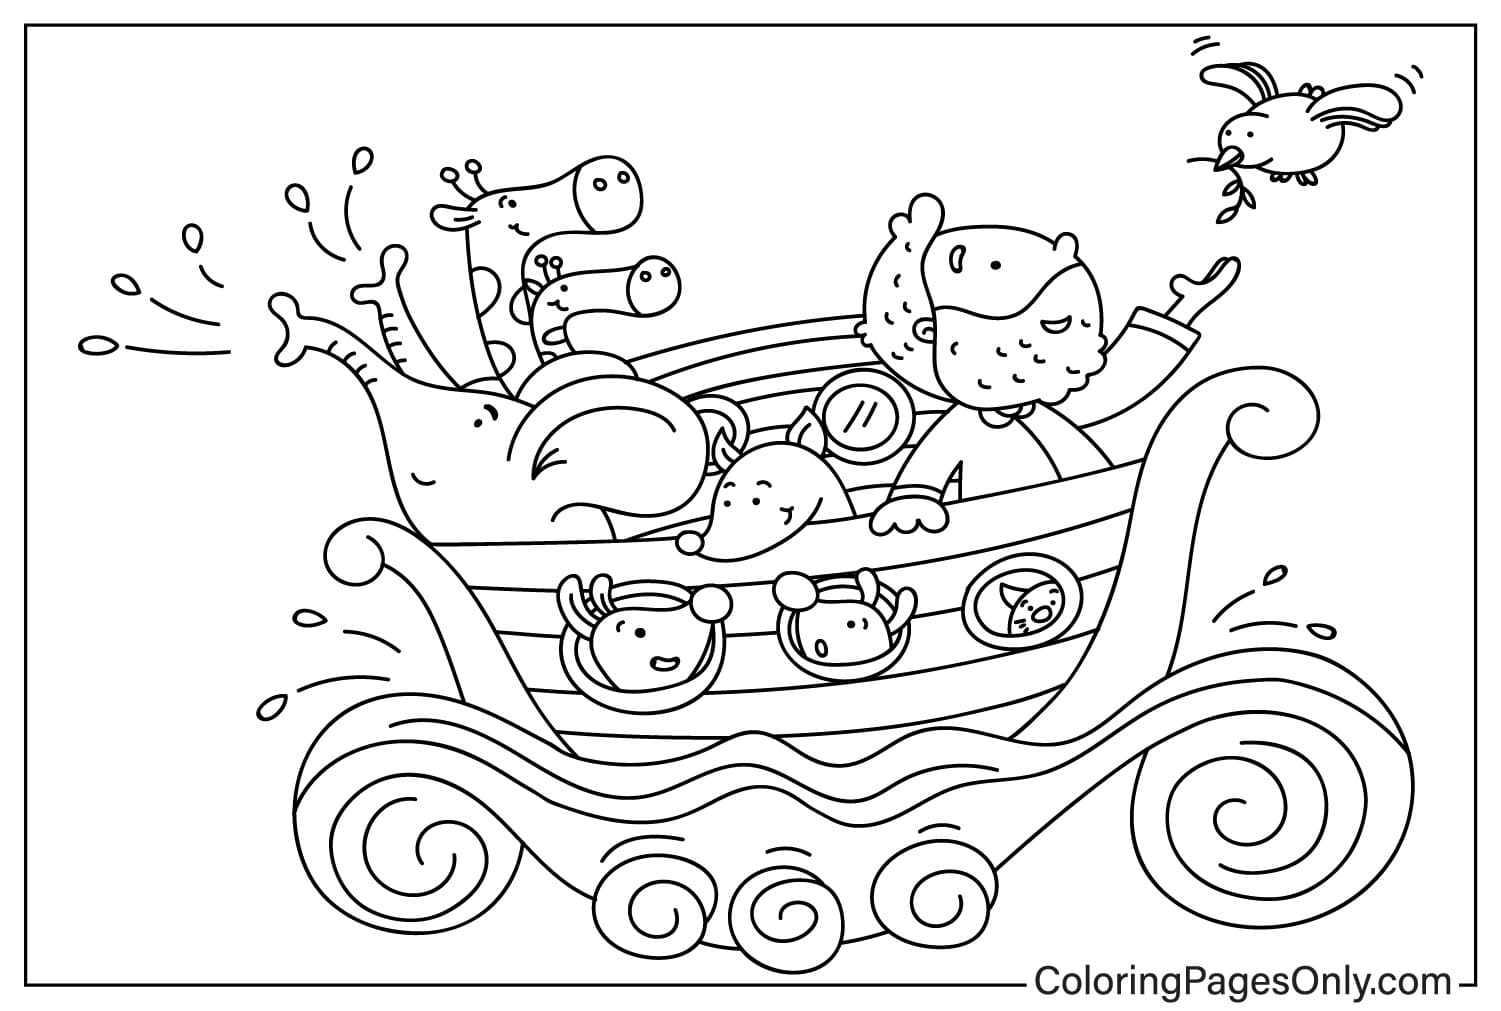 Простая раскраска Ноев ковчег до потопа для дошкольников из Ноева ковчега